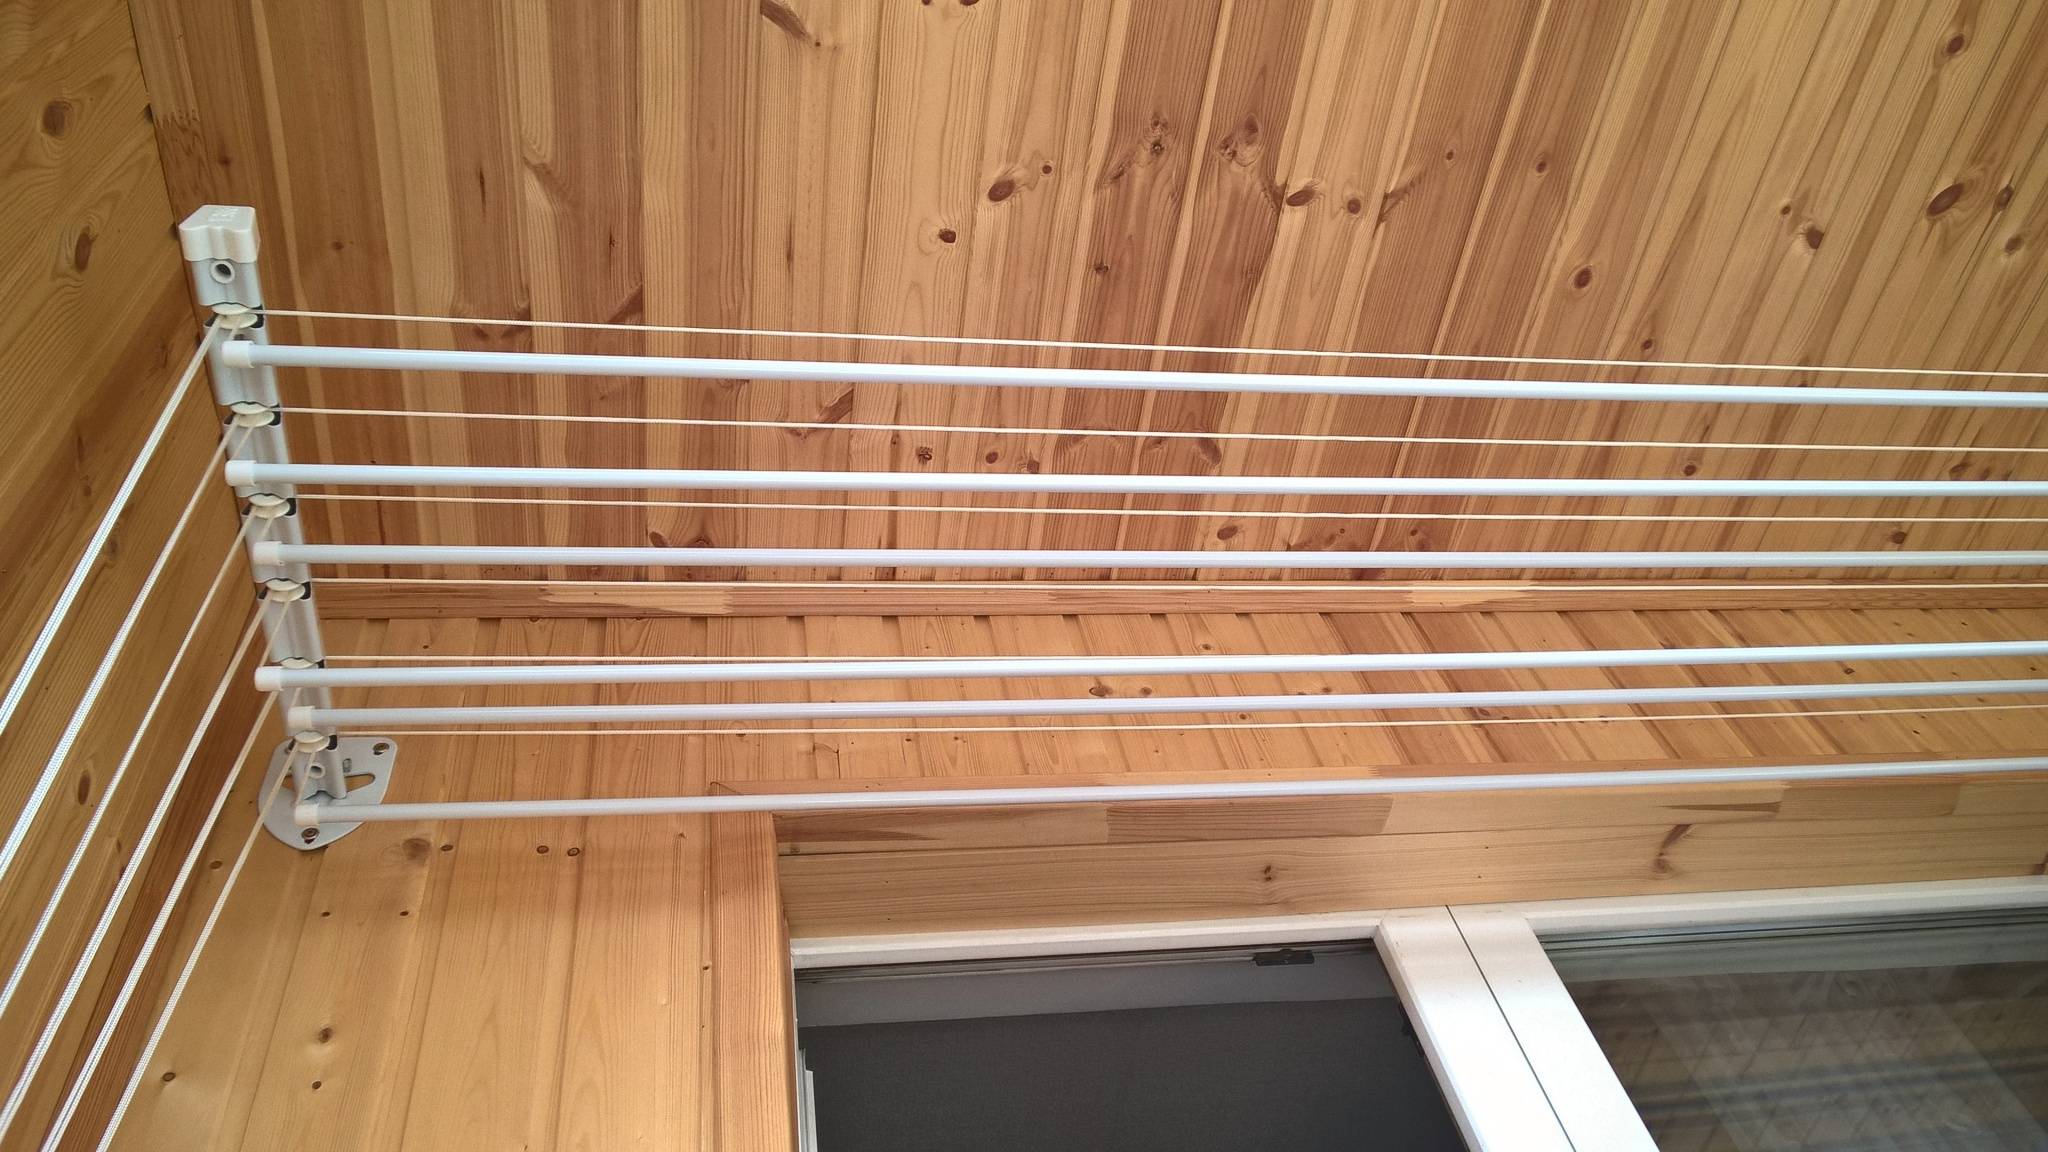 Обзор сушилок для белья на балкон: установка своими руками, раздвижные, лучшие, как повесить, видео